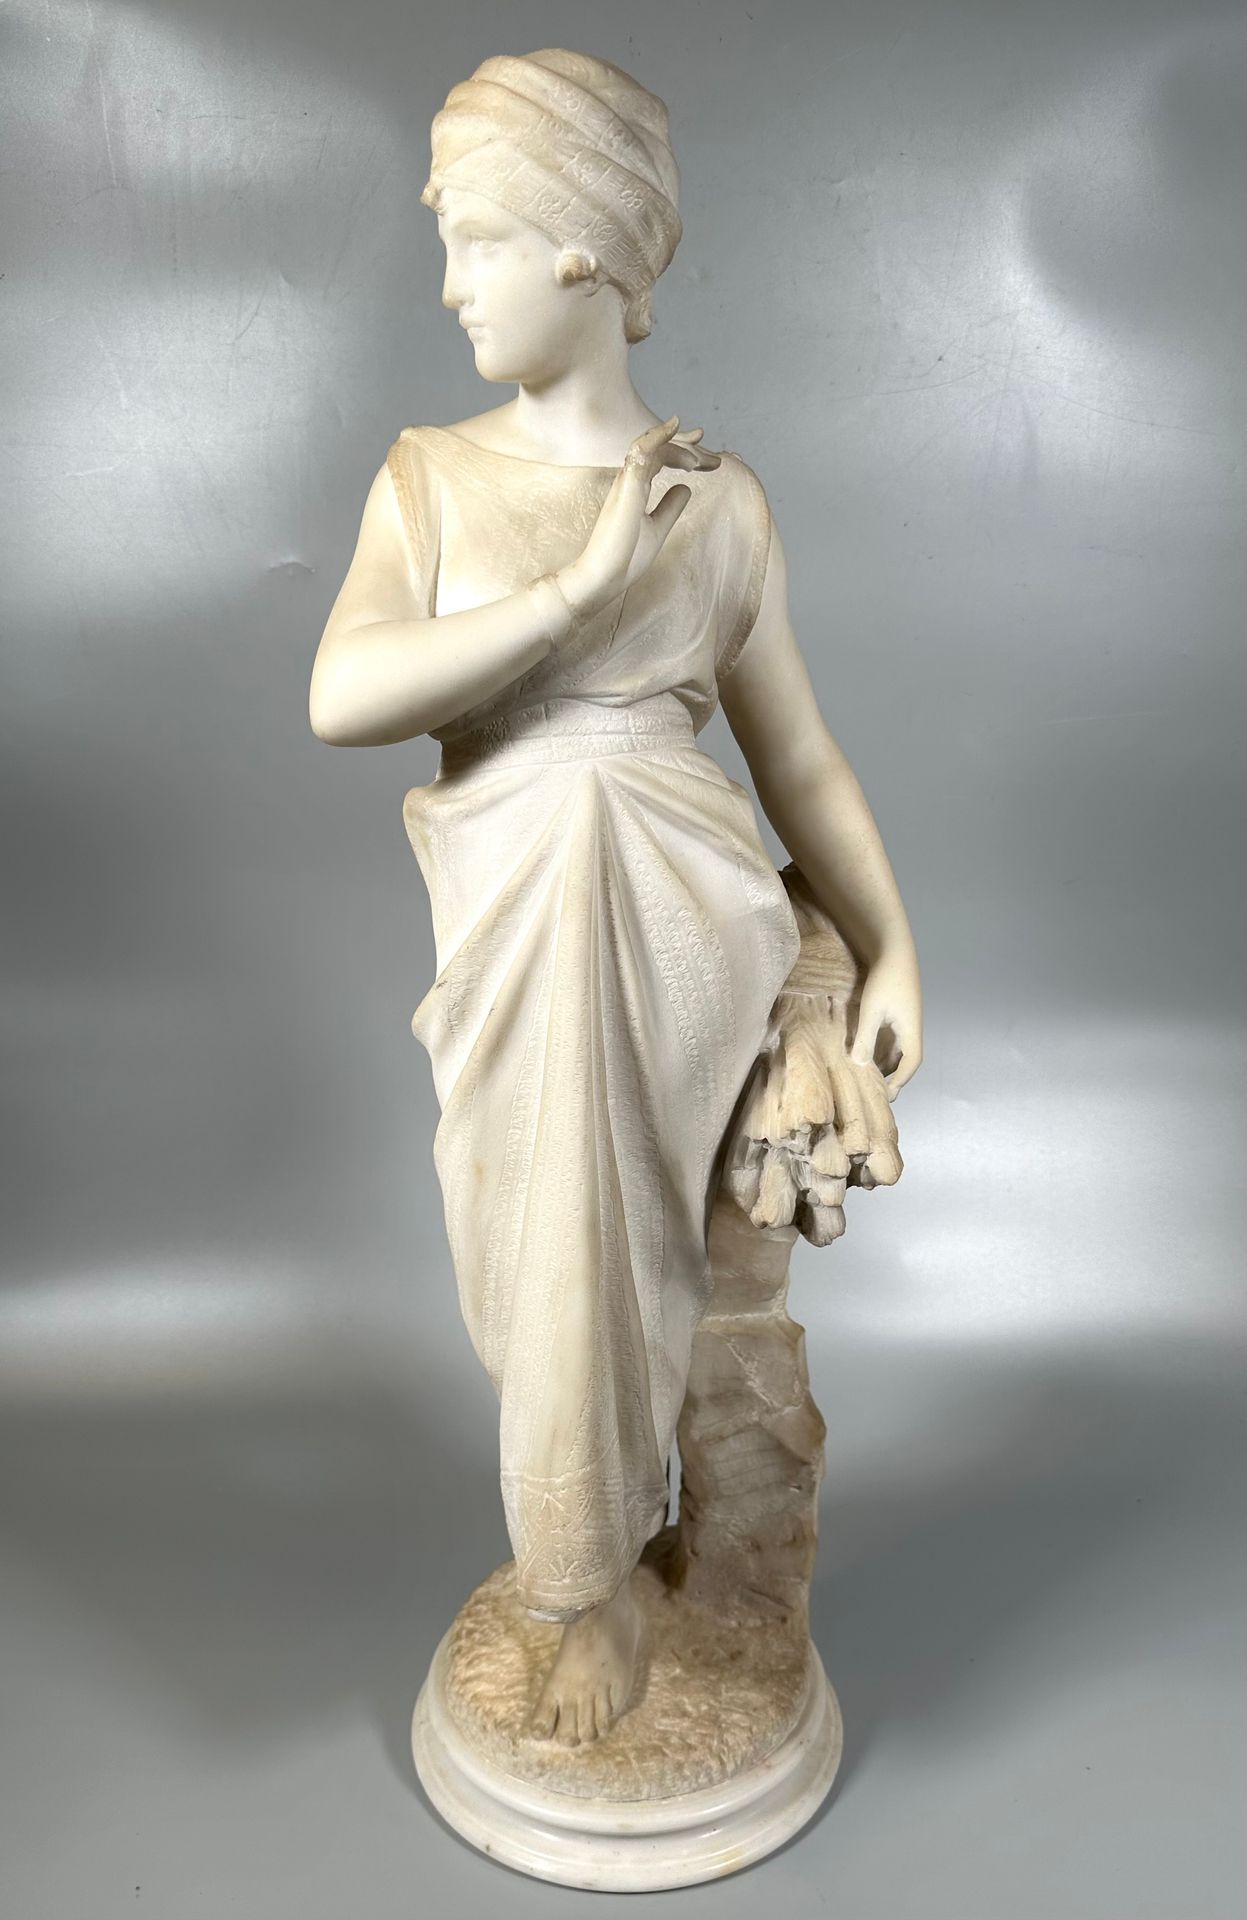 Null 古列尔莫-普吉（约 1850-1915 年）
拾穗者
白色大理石雕塑，背面有签名。
高度：75 厘米
(缺指和修复）